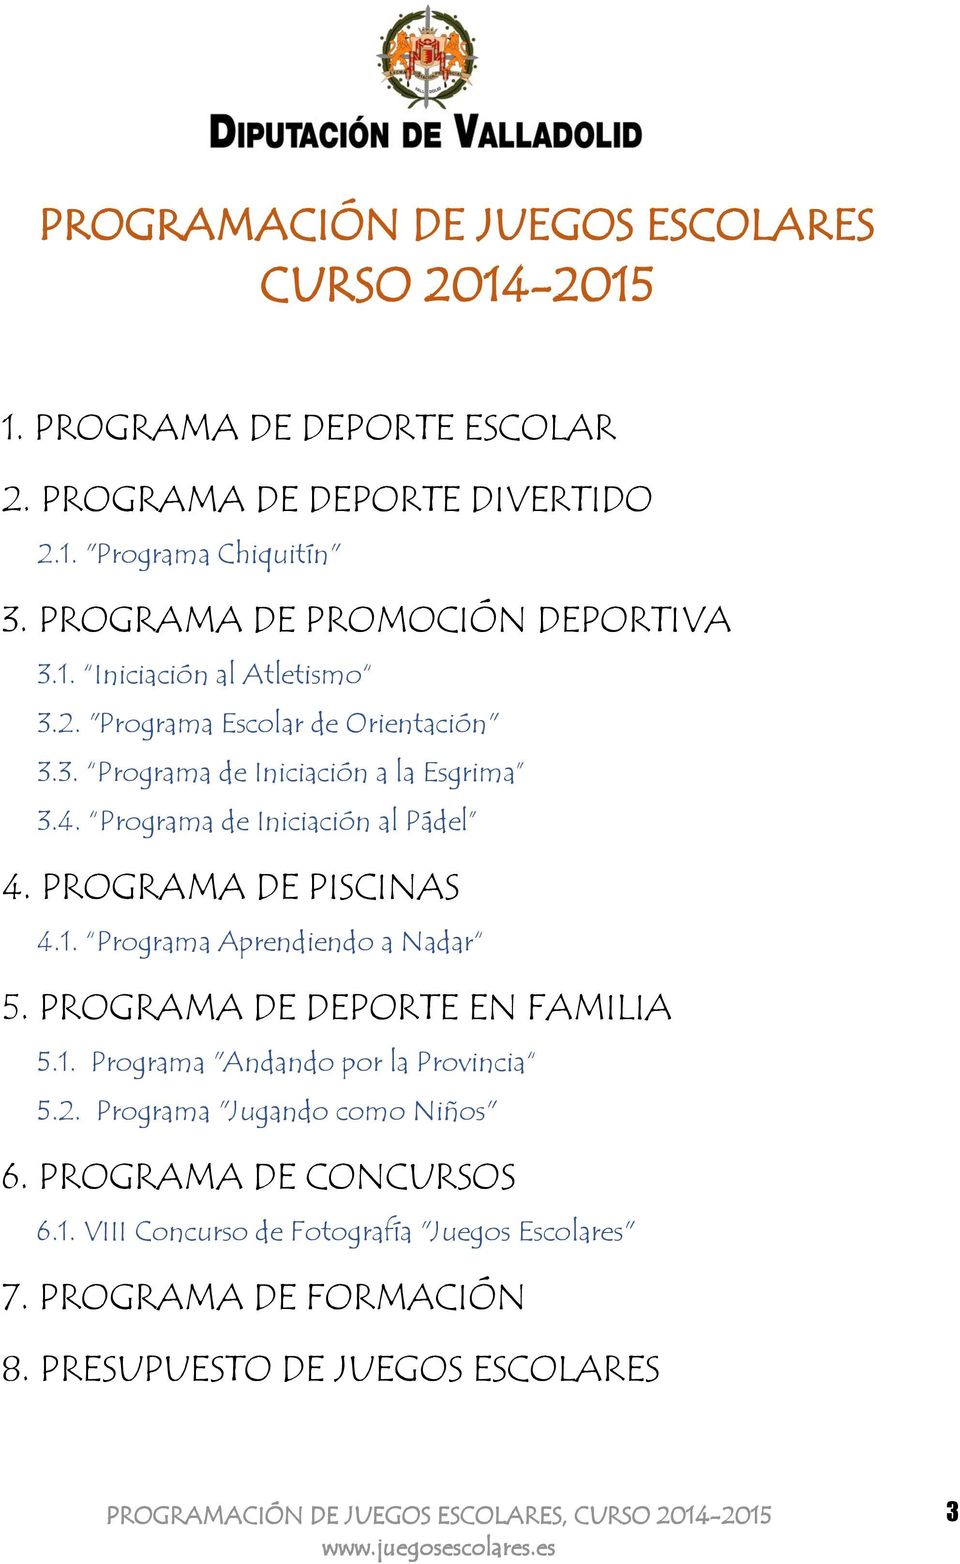 Programa de Iniciación al Pádel 4. PROGRAMA DE PISCINAS 4.1. Programa Aprendiendo a Nadar 5. PROGRAMA DE DEPORTE EN FAMILIA 5.1. Programa "Andando por la Provincia 5.